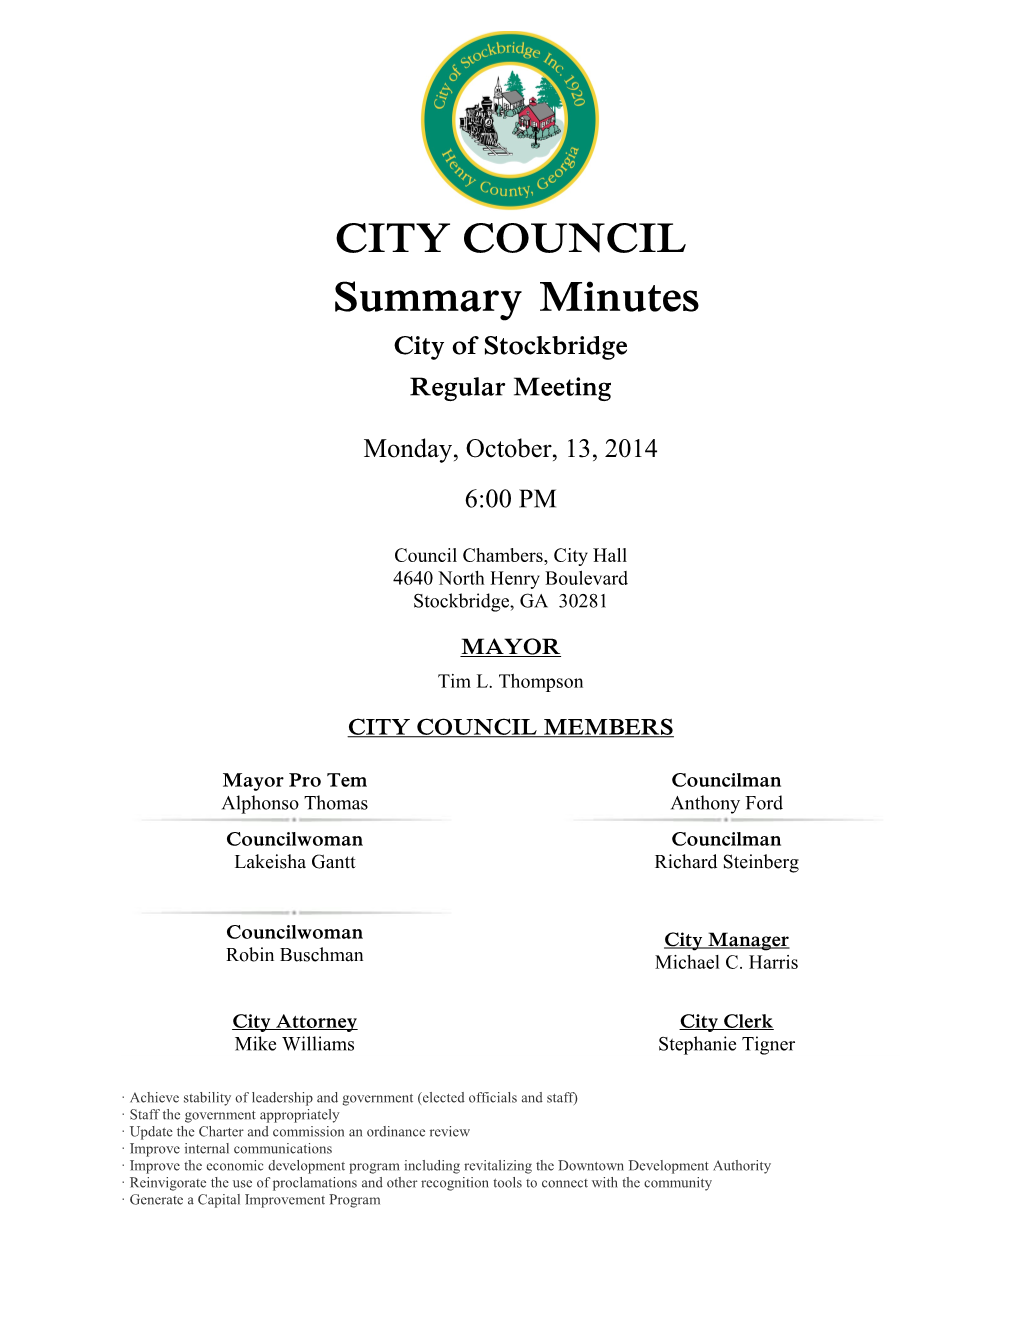 City Council - Regular Meeting - Oct 13, 2014 6:00 PM